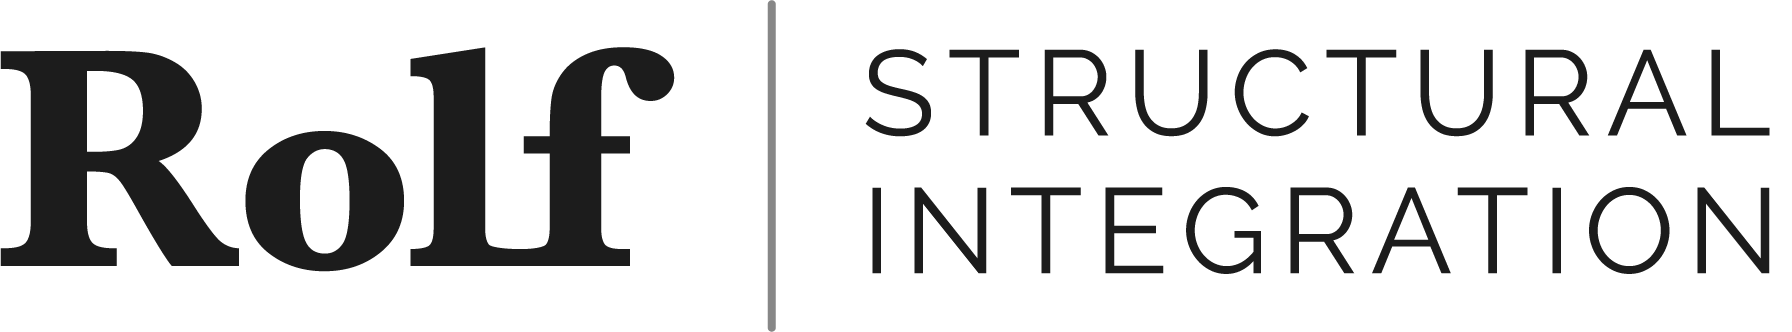 Rolf | Structural Integration Logo